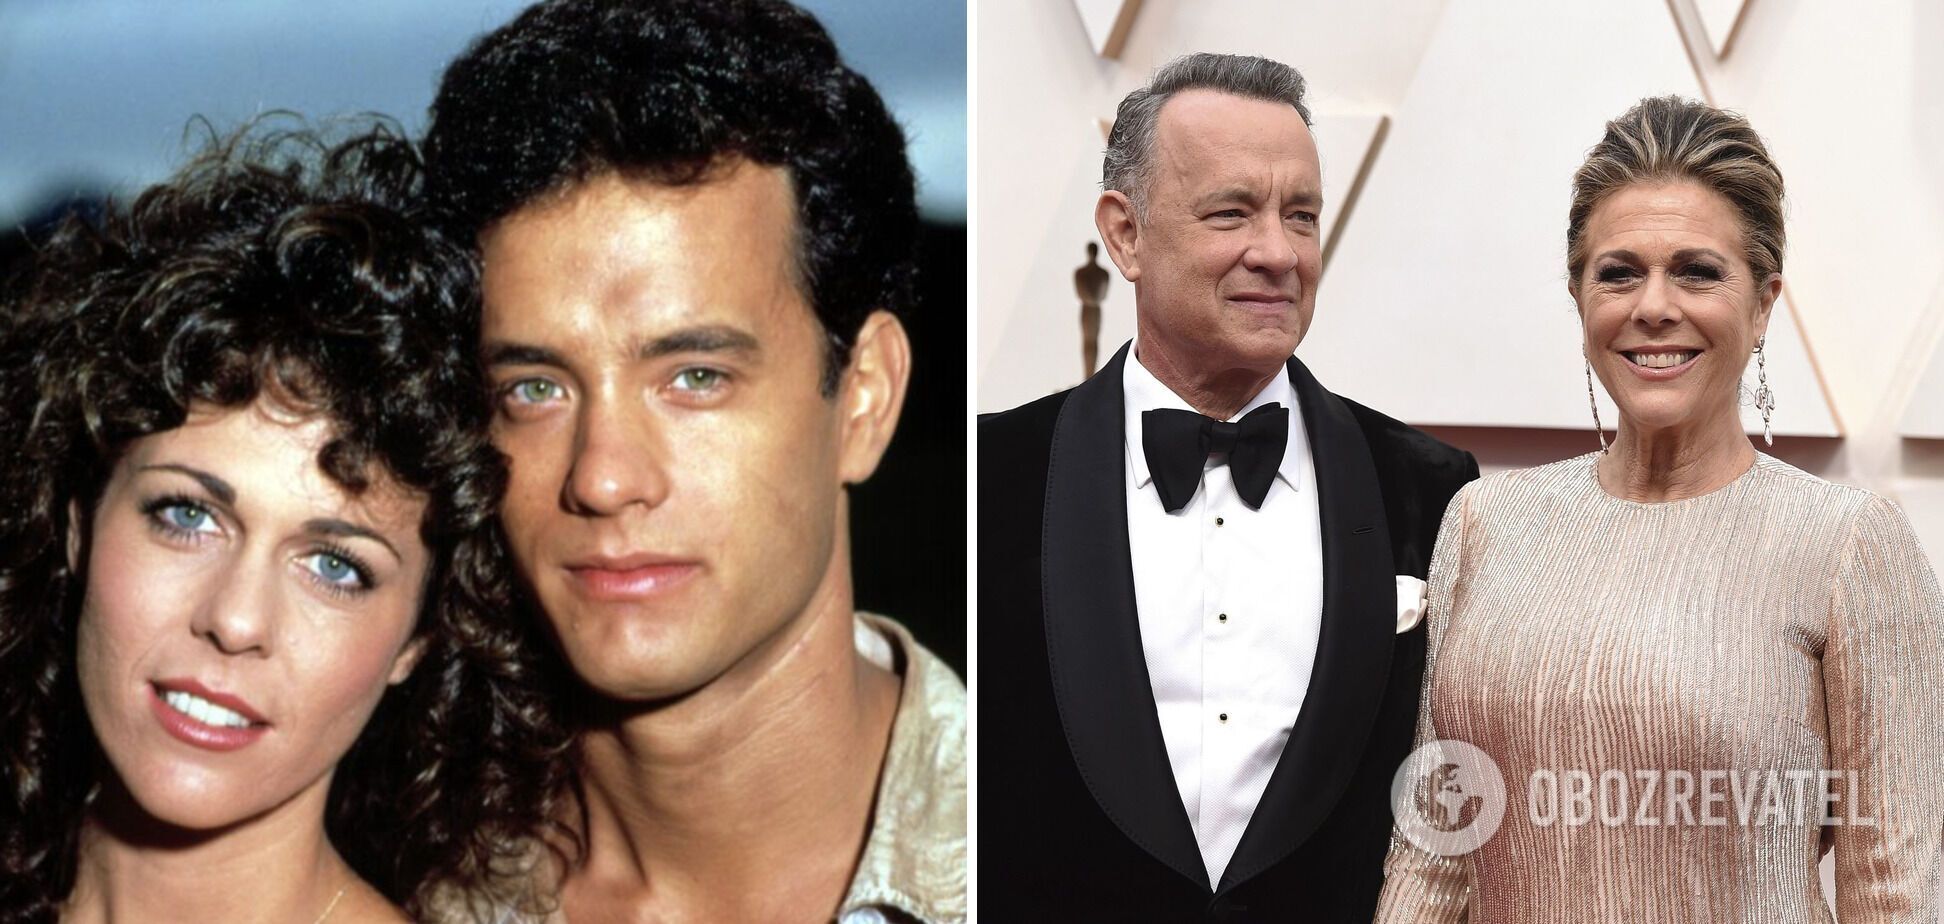 Tom Hanks met his wife on the set